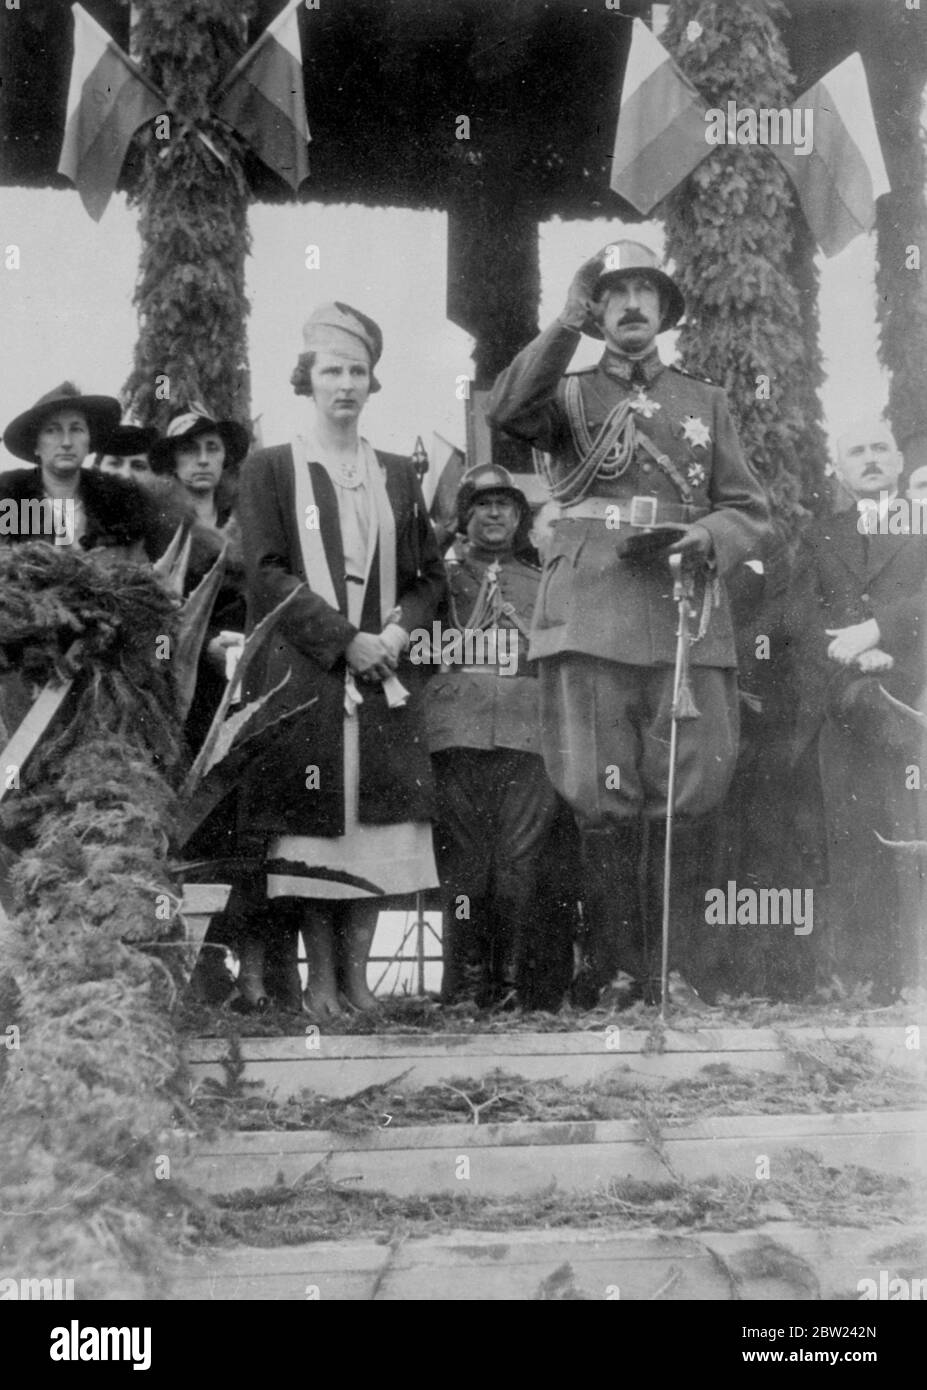 Le roi Boris de Bulgarie, qui a assisté aux manœuvres de l'armée bulgare, était accompagné par la reine Joanne lorsqu'il a pris le salut lors d'un défilé militaire en célébration du 20e anniversaire de l'accession des rois. Spectacles photo: Roi Boris, en casque d'acier, et la reine Joanna prenant le salut à la parade. 6 octobre 1938 Banque D'Images